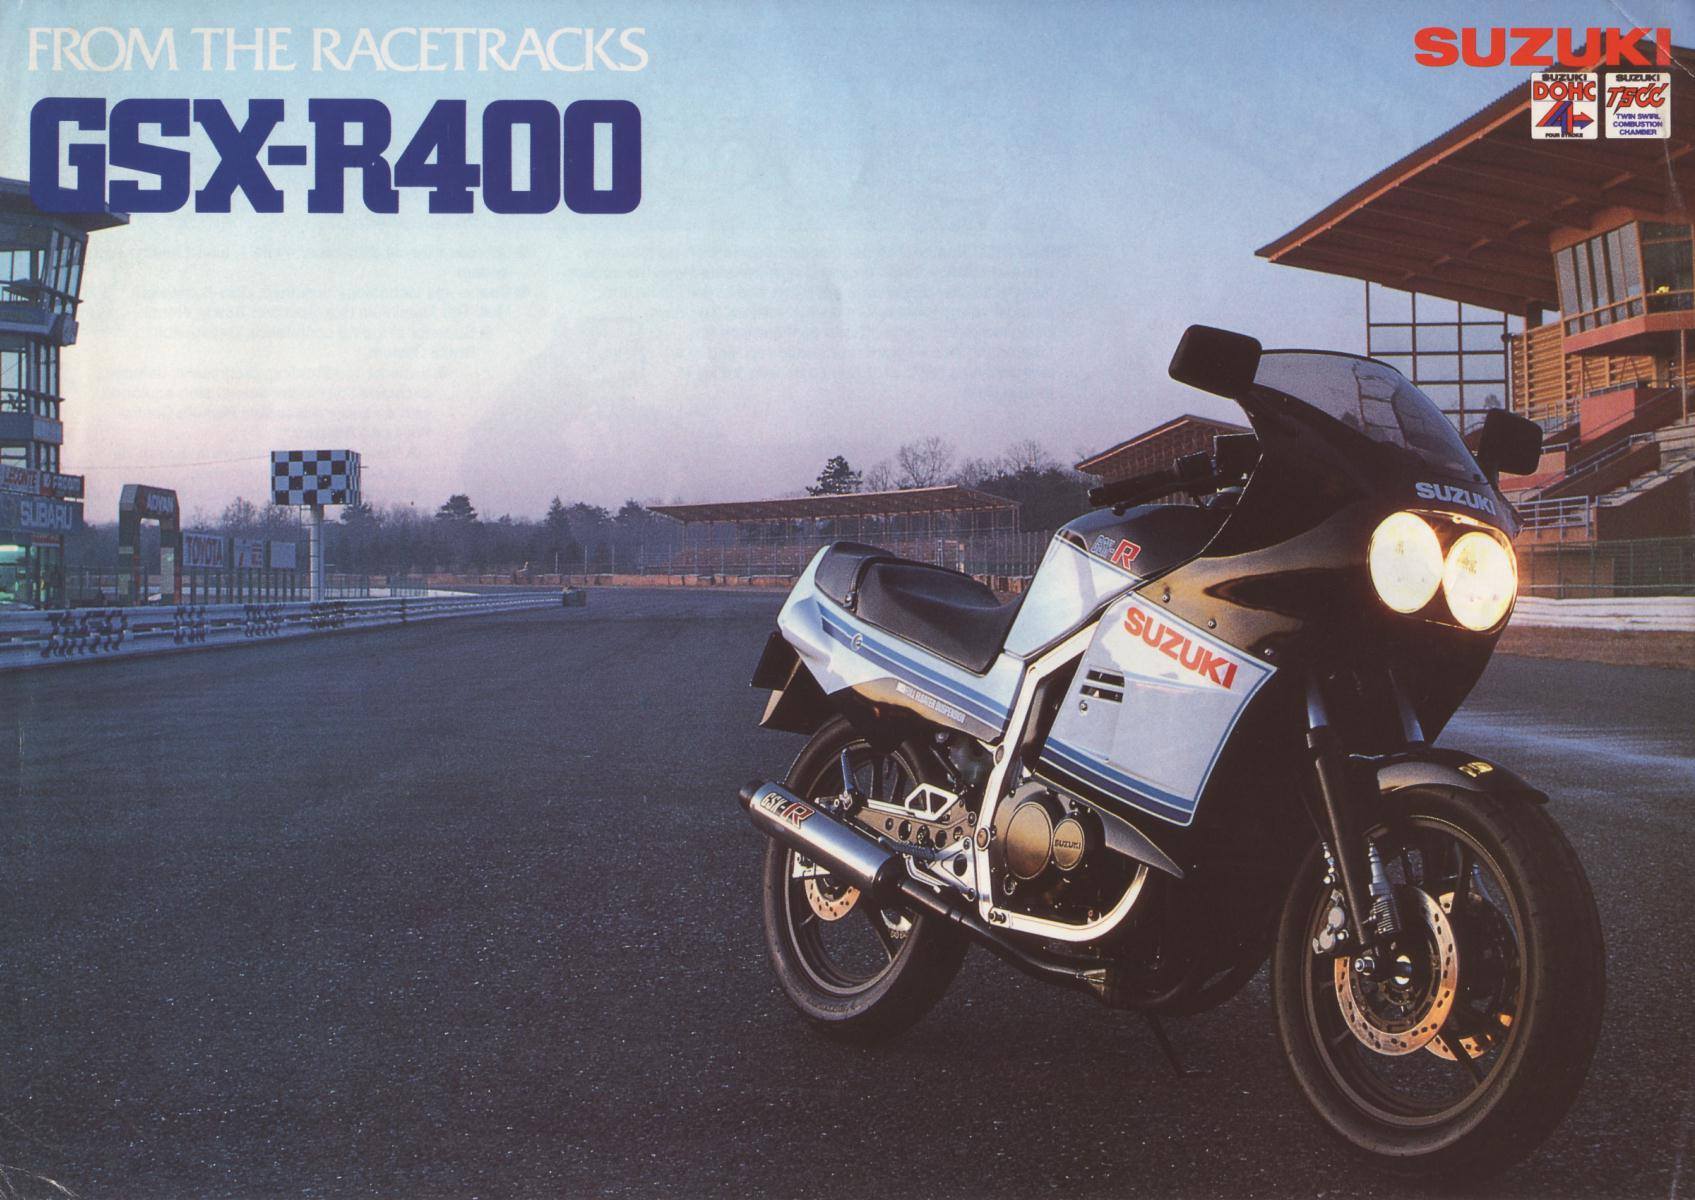 Suzuki GSX-R400 1985 Brochure